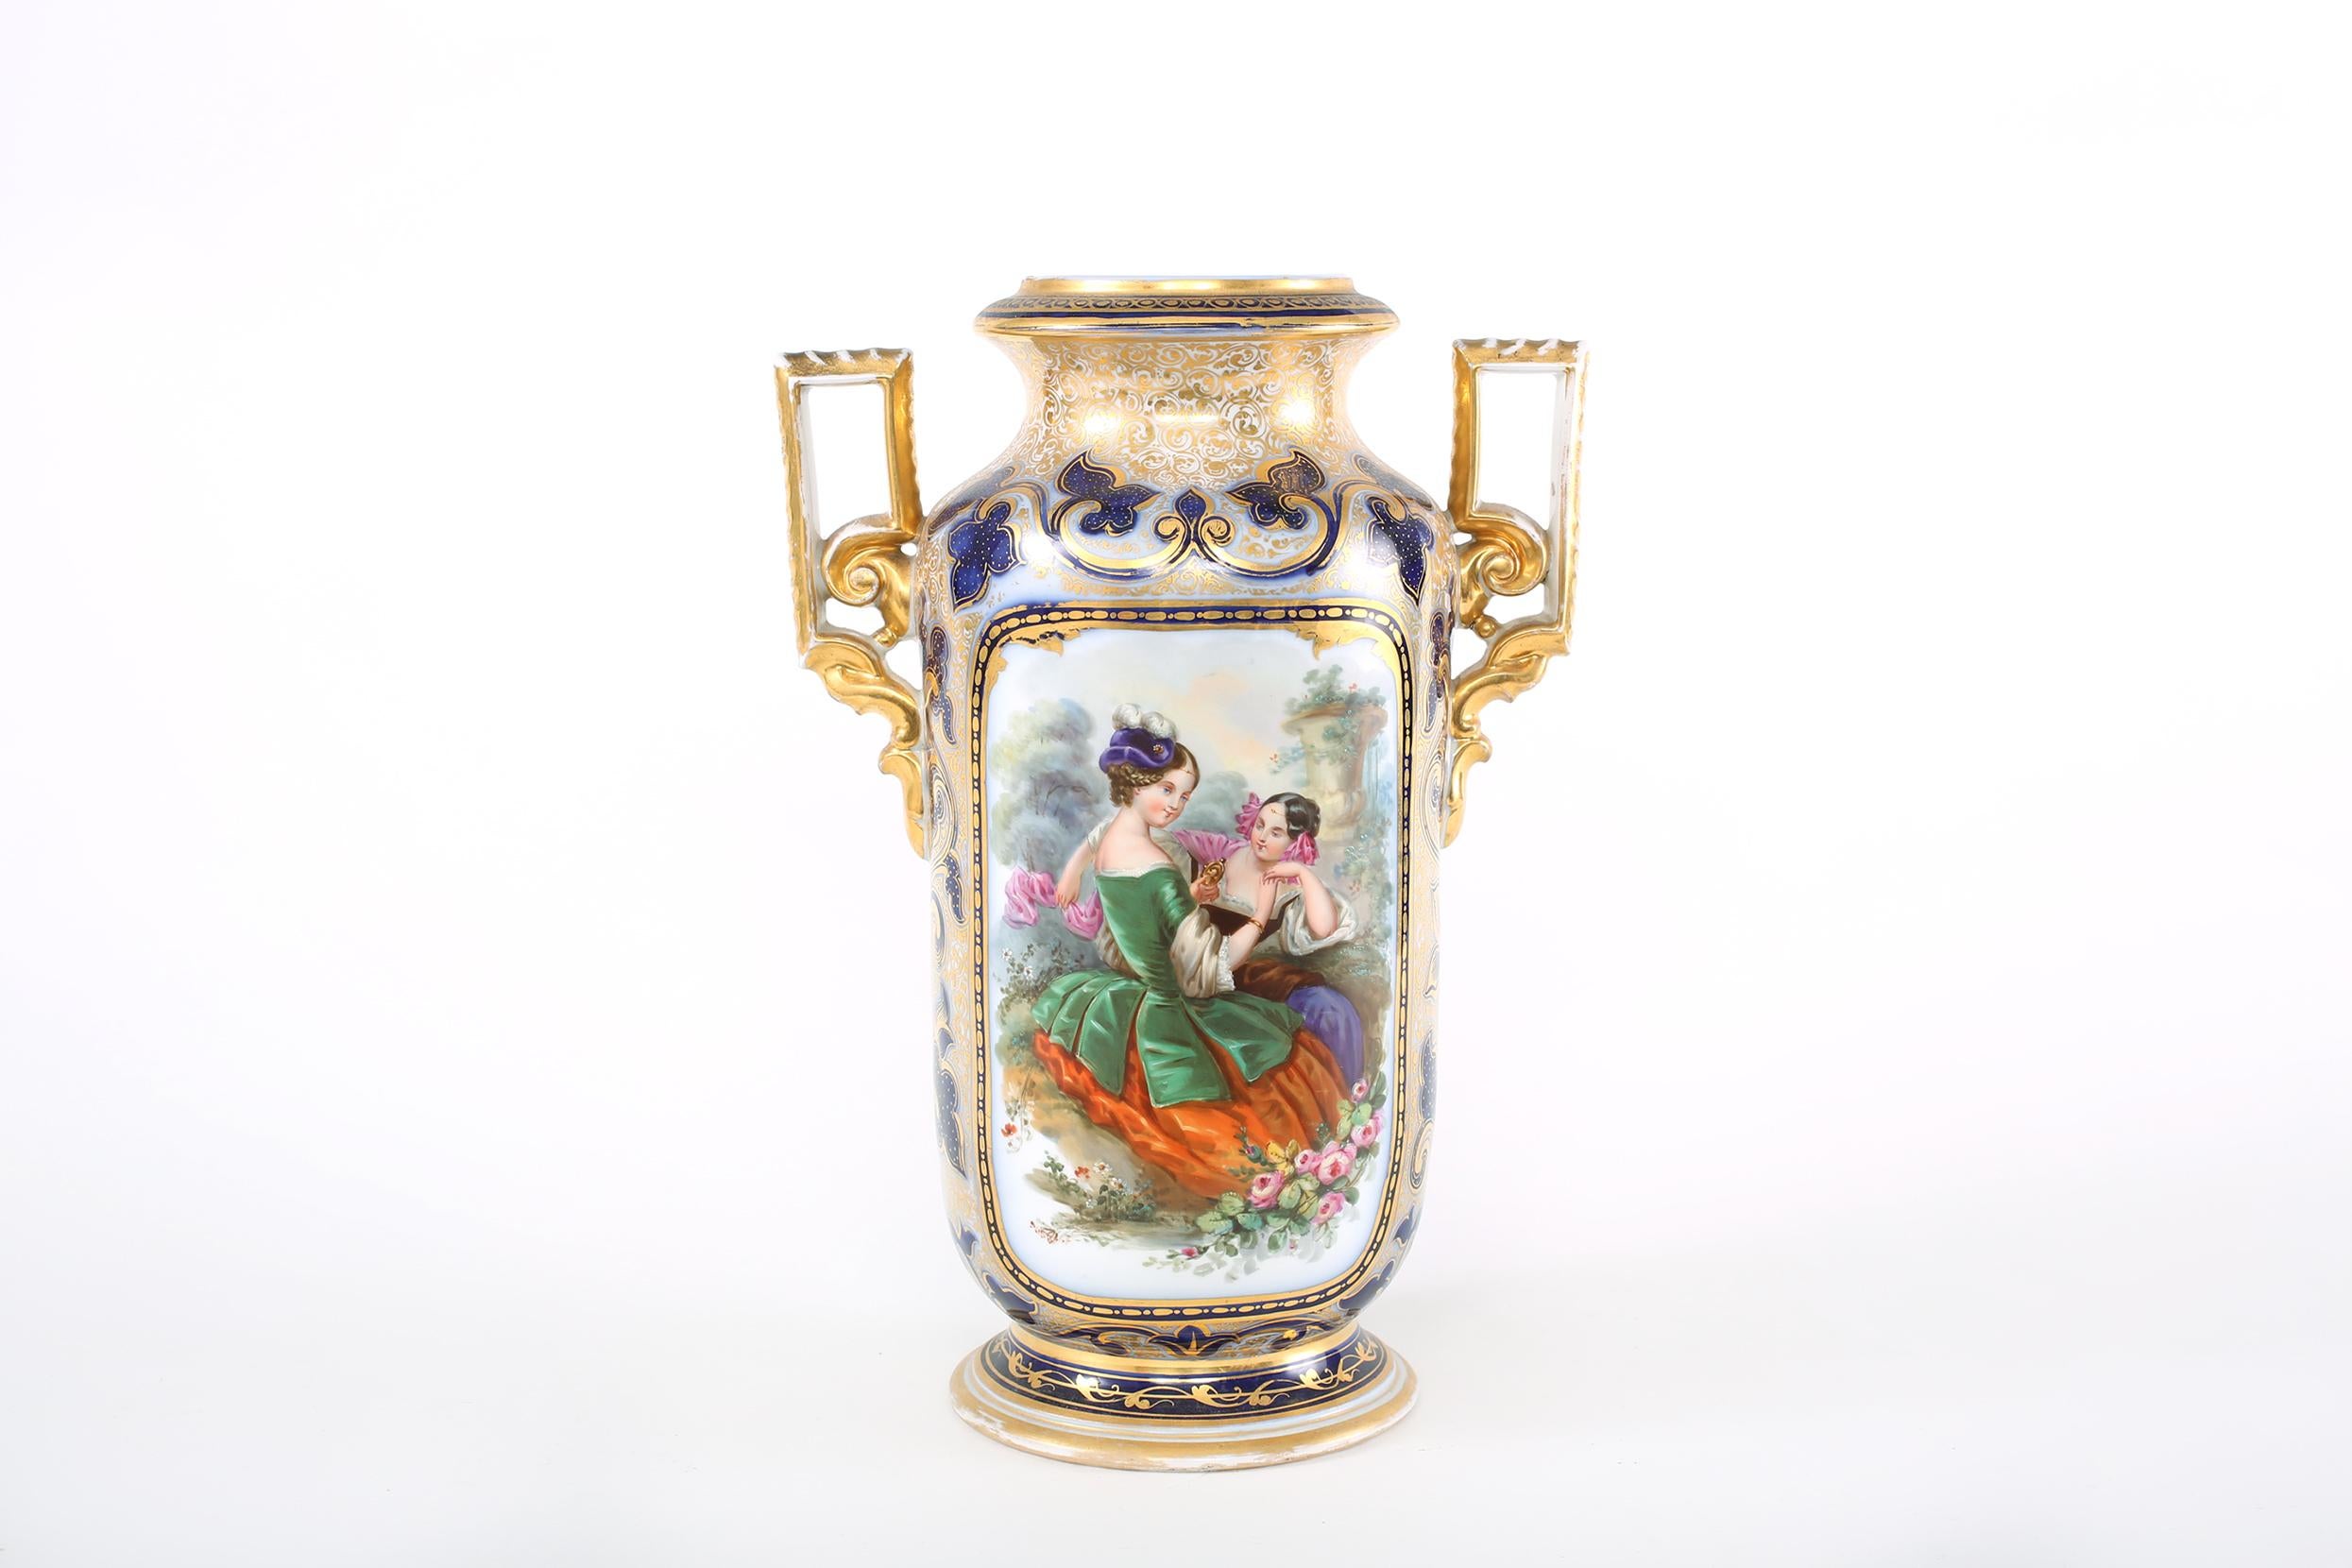  French Porcelain Decorative Vase  / Side Handles For Sale 5